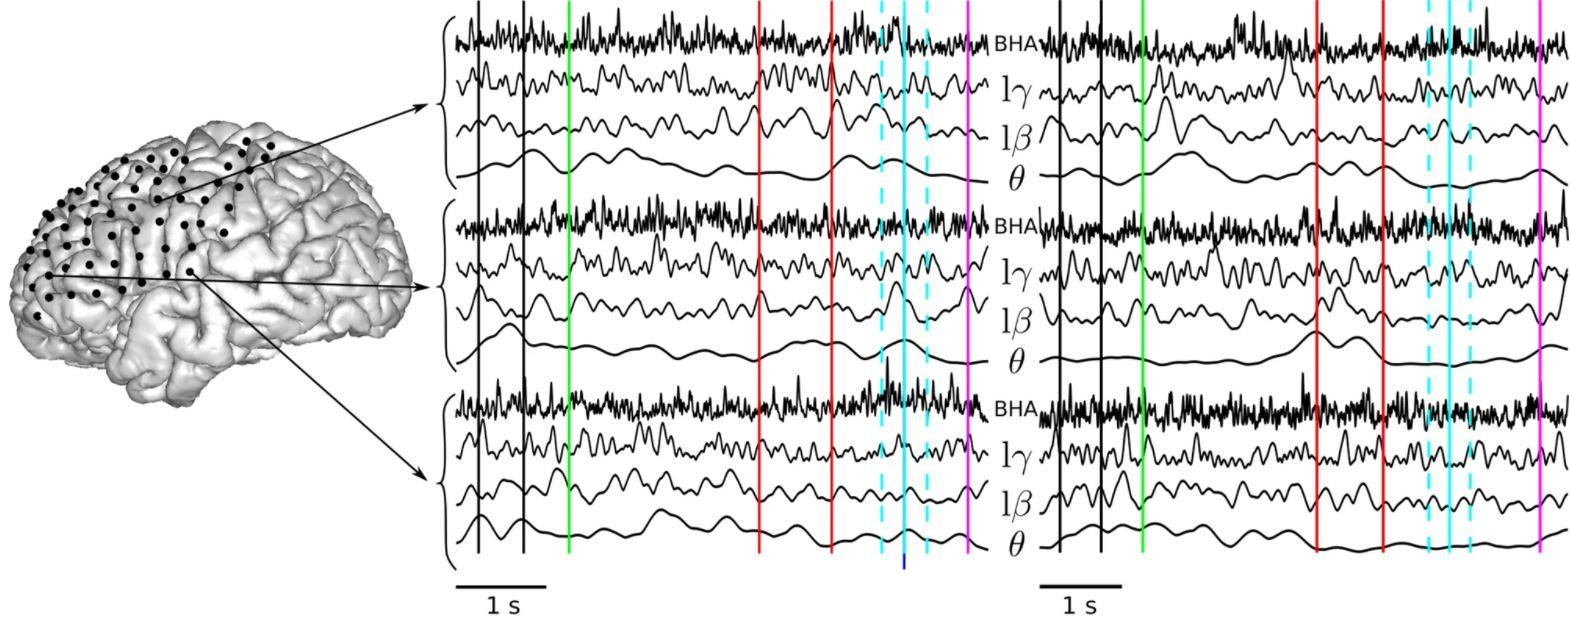 Le langage prononcé (à gauche), comparé au langage imaginé (à droite), sur quatre bandes de fréquences. Les lignes verticales indiquent les événements temporels pertinents de l'étude: période de base (entre les lignes noires), apparition du mot à l'écran (vert), indices auditifs (rouge), temps de parole attendu (bleu clair), temps de parole réel (bleu foncé), fenêtre d'analyse (bleu pointillé clair) et réponse manuelle (violet). [Nature Communications - Thimothée Proix et al.]